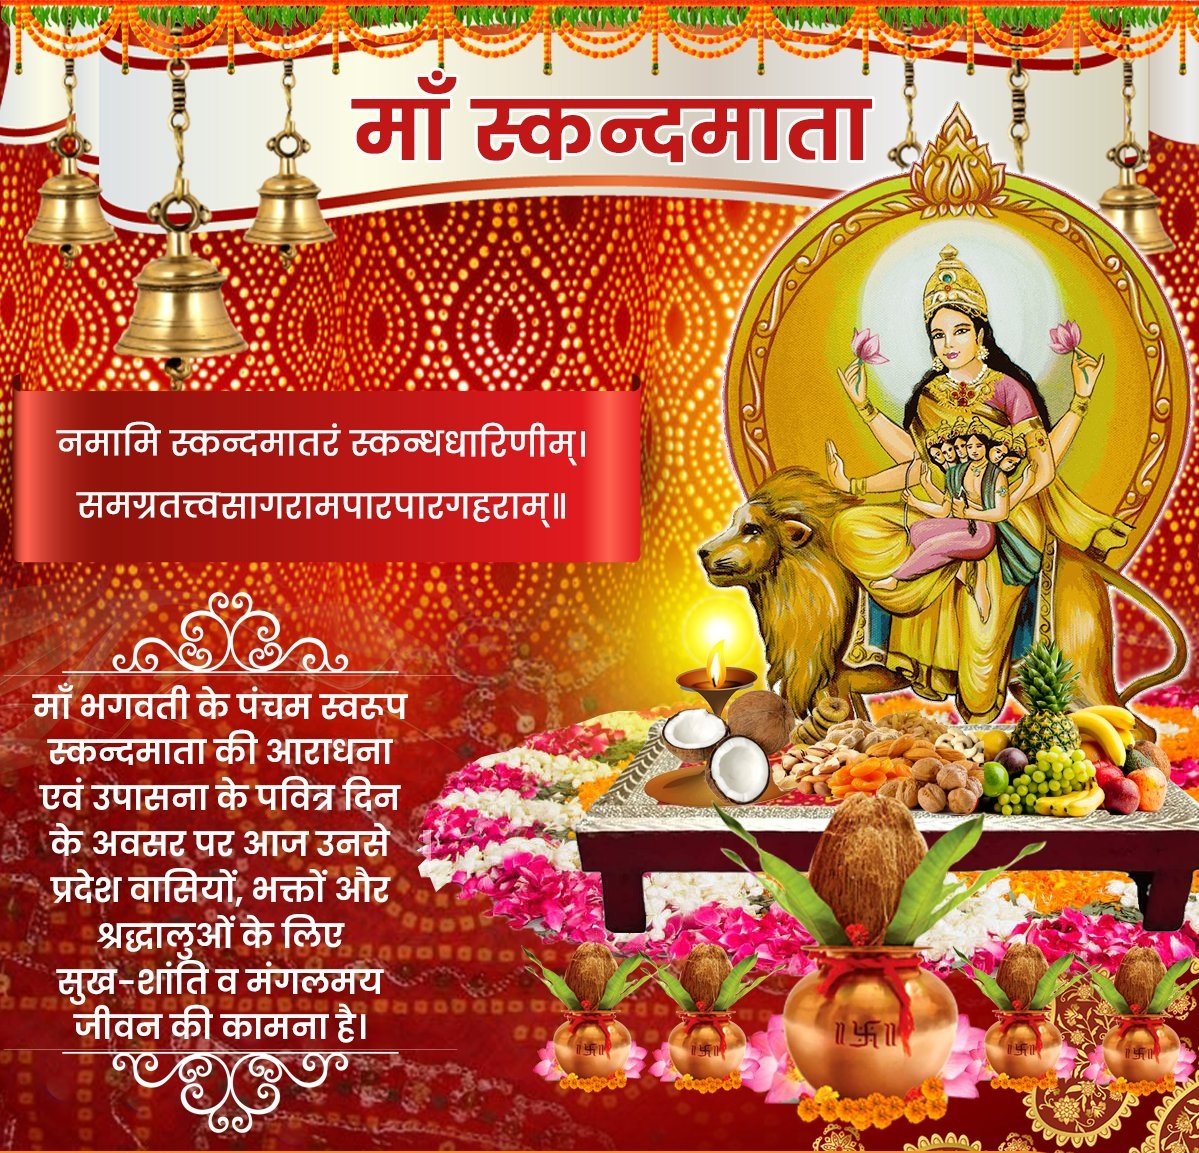 शारदीय नवरात्र का पाँचवा दिन आदिशक्ति माँ दुर्गा के पंचम स्वरूप स्कंदमाता के उपासना का दिन है। उपासकों को परम शांति मोक्ष तथा ज्ञान प्रदान करने वाली सूर्यमंडल की अधिष्‍ठात्री देवी
#माँ_स्कन्दमाता की कृपा और करुणा सदैव हम सभी पर सदैव बनी रहे।

जय माँ भवानी। 🙏🚩